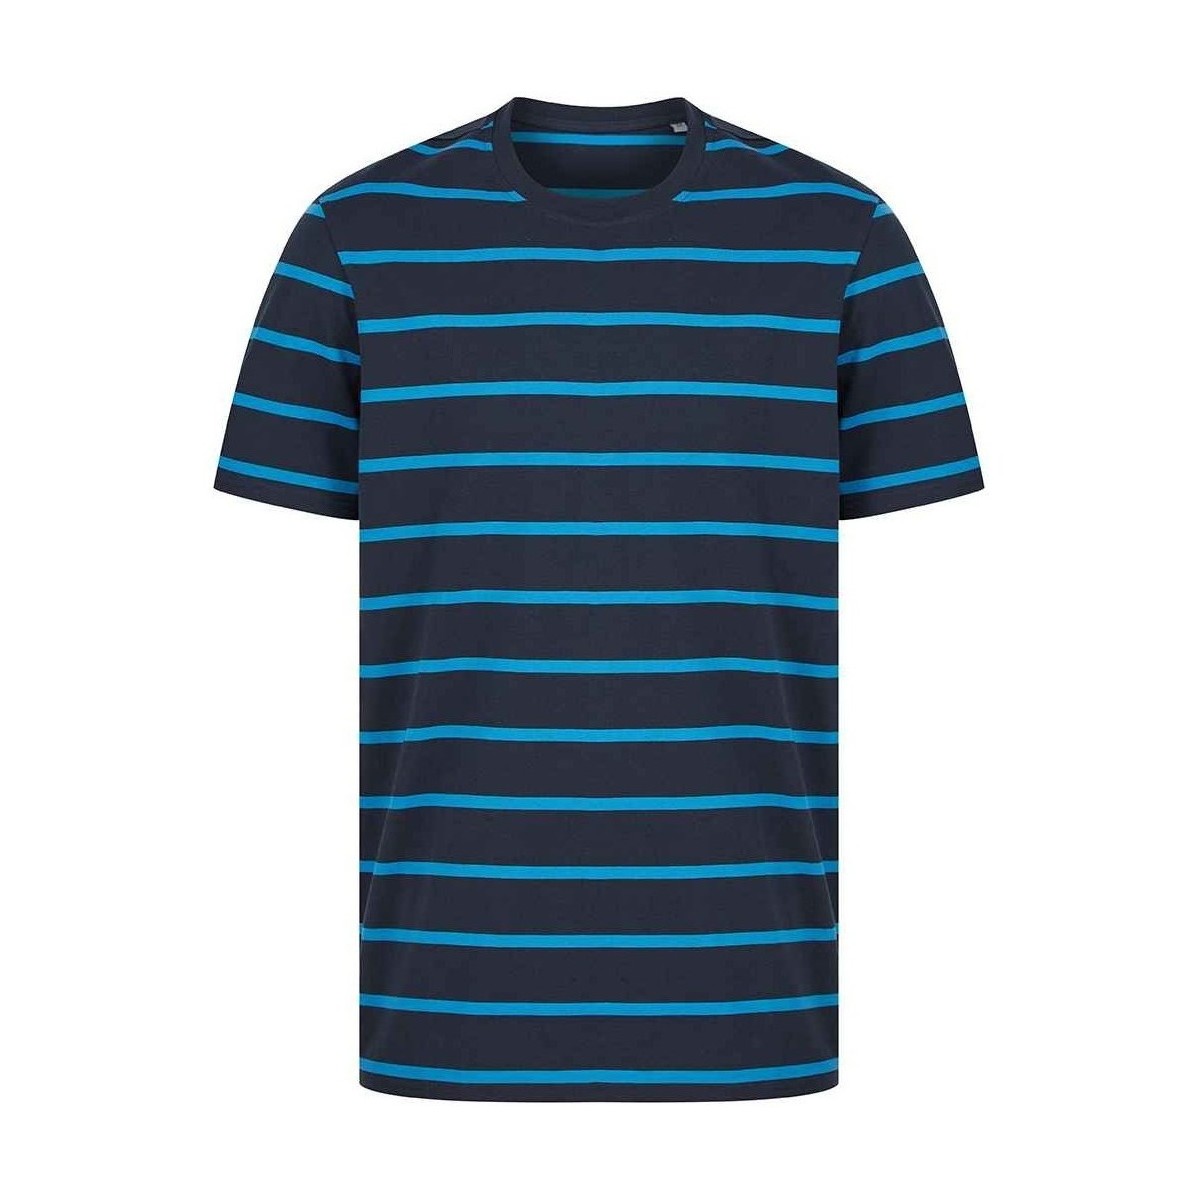 Vêtements T-shirts manches longues Front Row FR136 Bleu